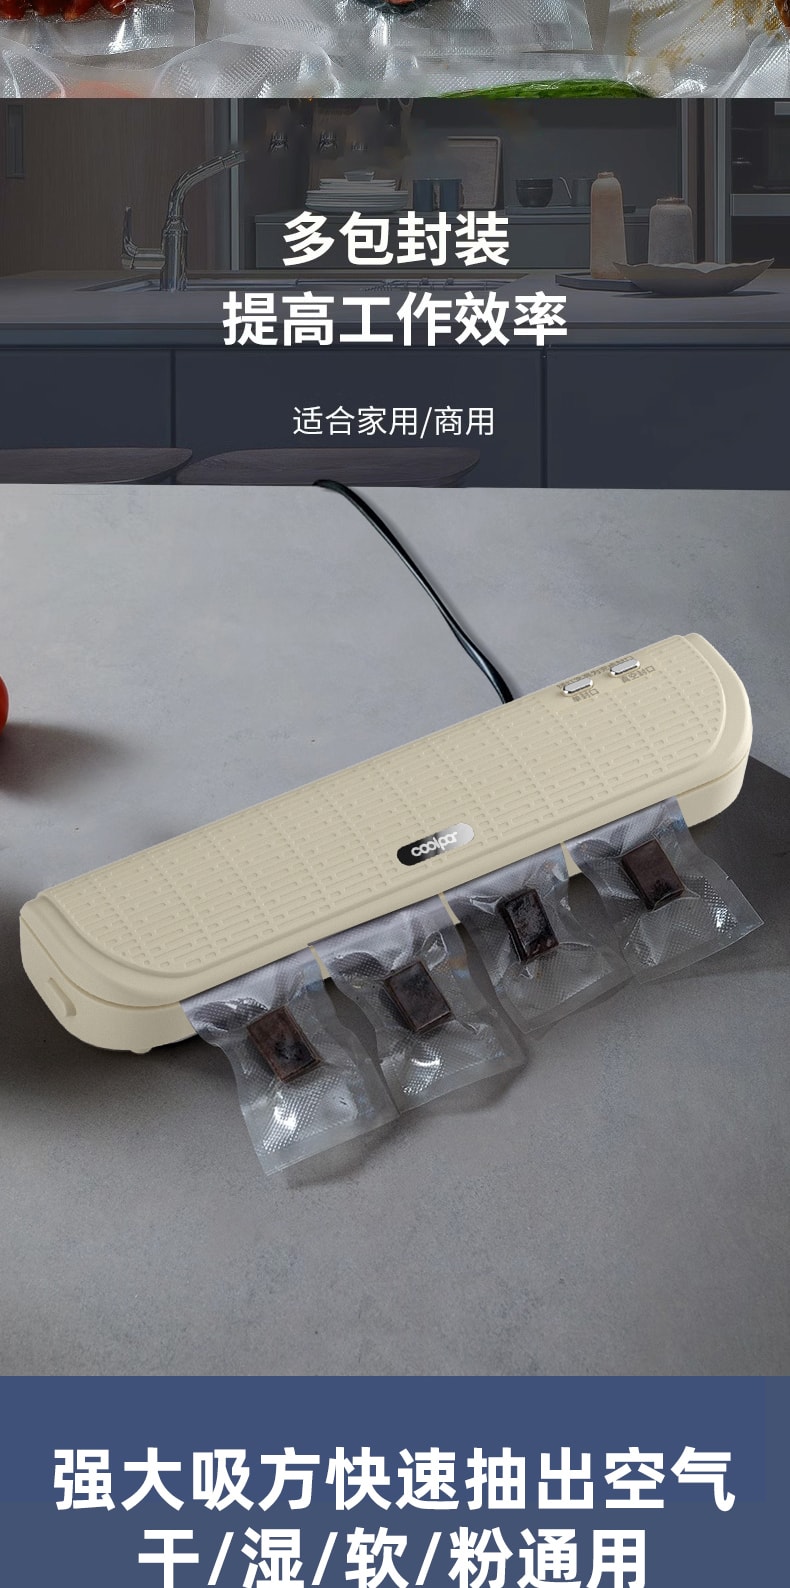 中国MinHuang敏煌 自动真空封口机小型塑封机家用食品保鲜封口机 白色 1件